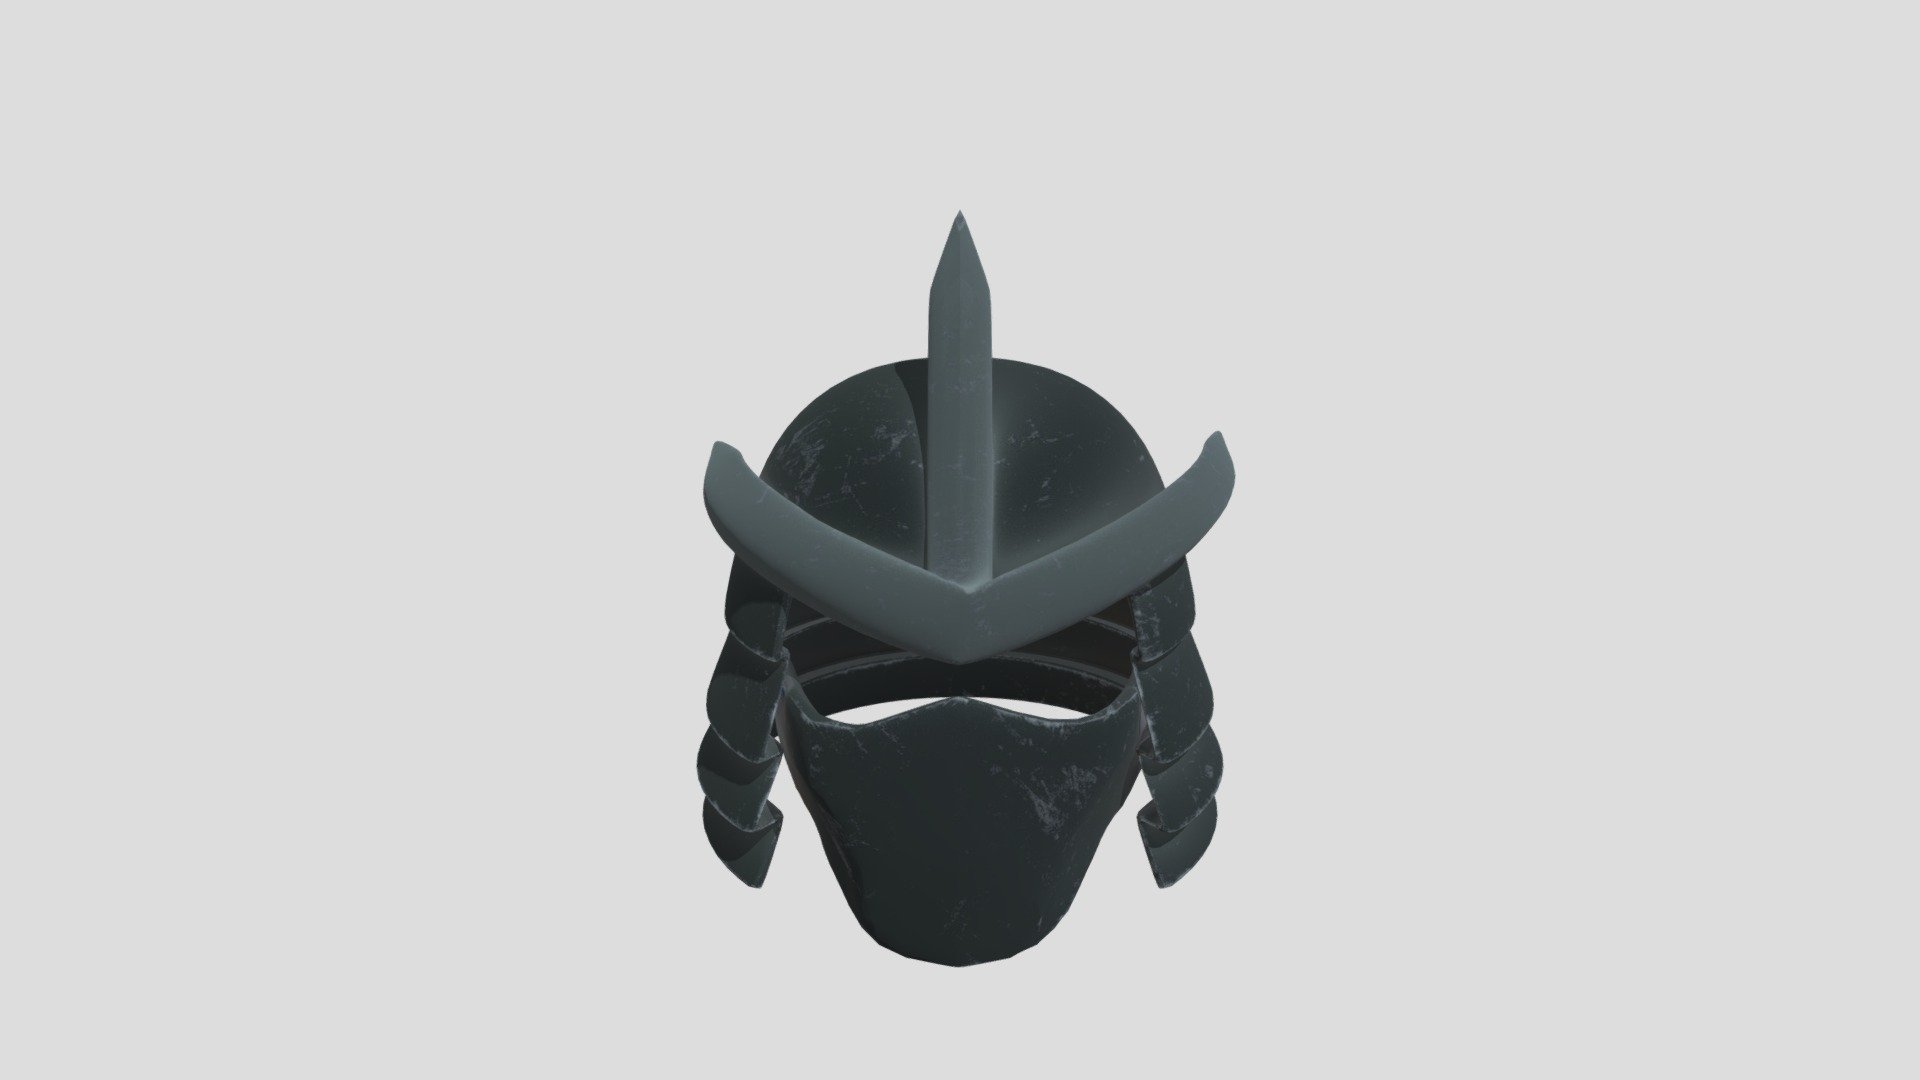 shredder helmet